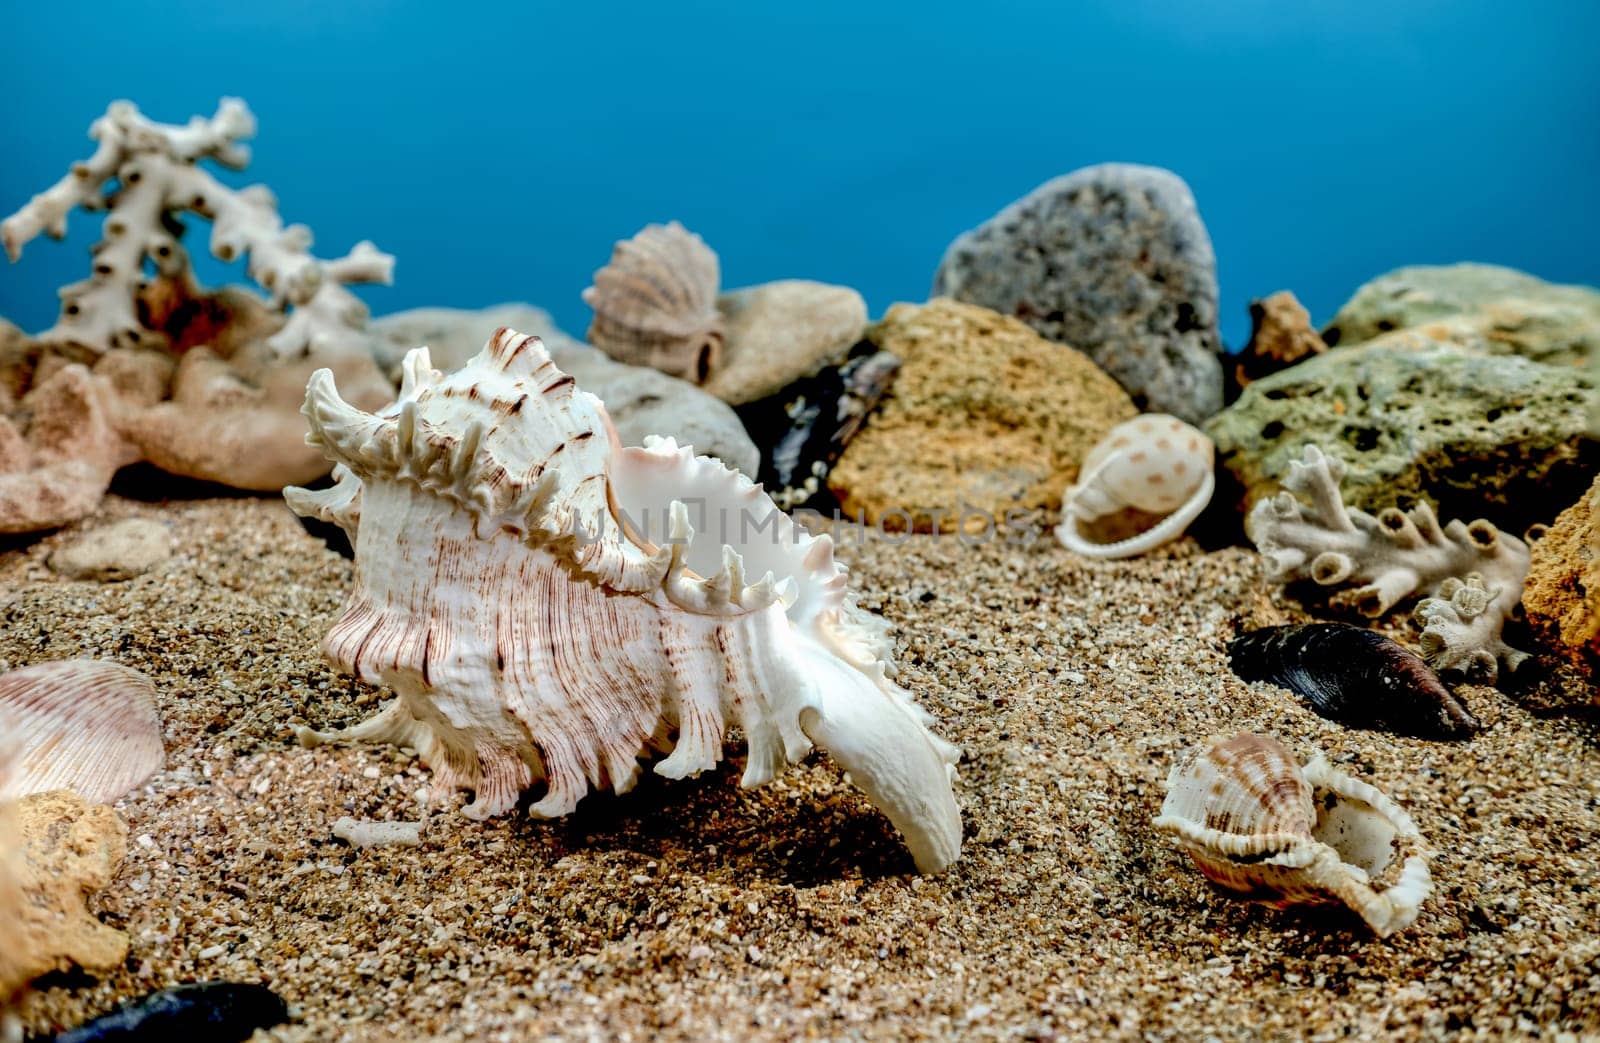 Chicoreus Ramosus Murex seashell underwater by Multipedia